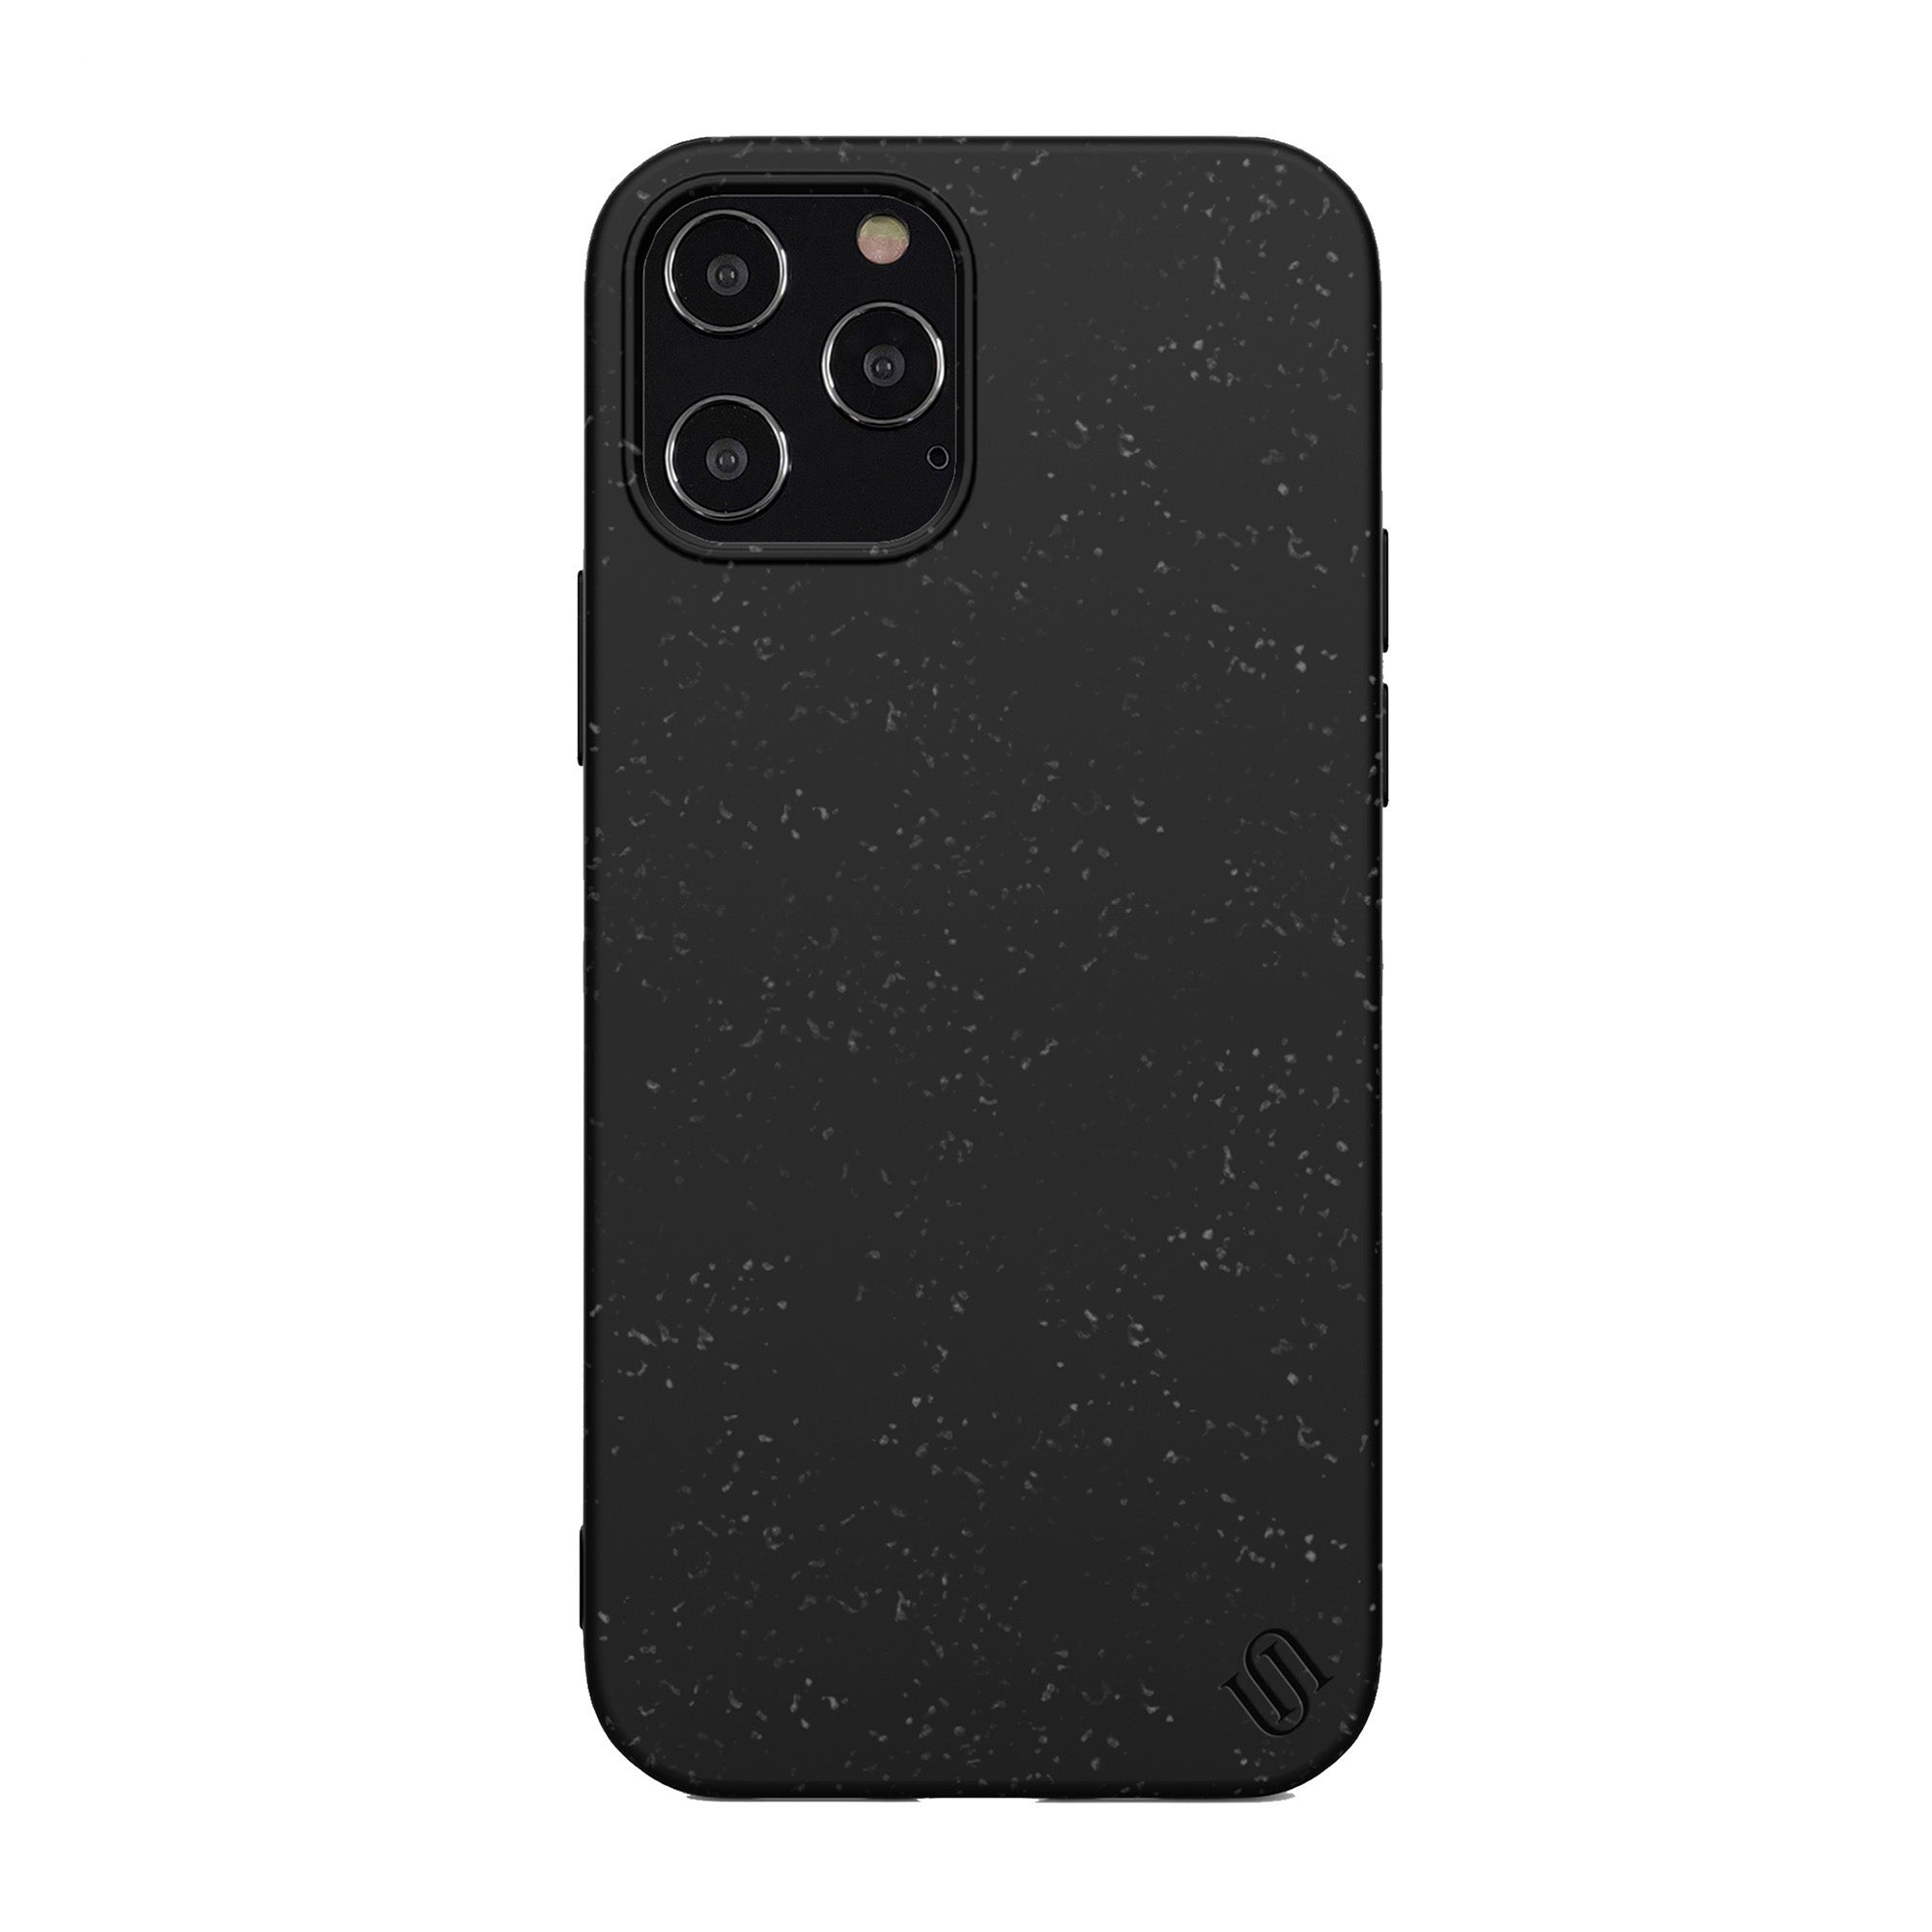 iPhone 12 Pro Max Uunique Black Olive Nutrisiti Eco Back Case - 15-07632